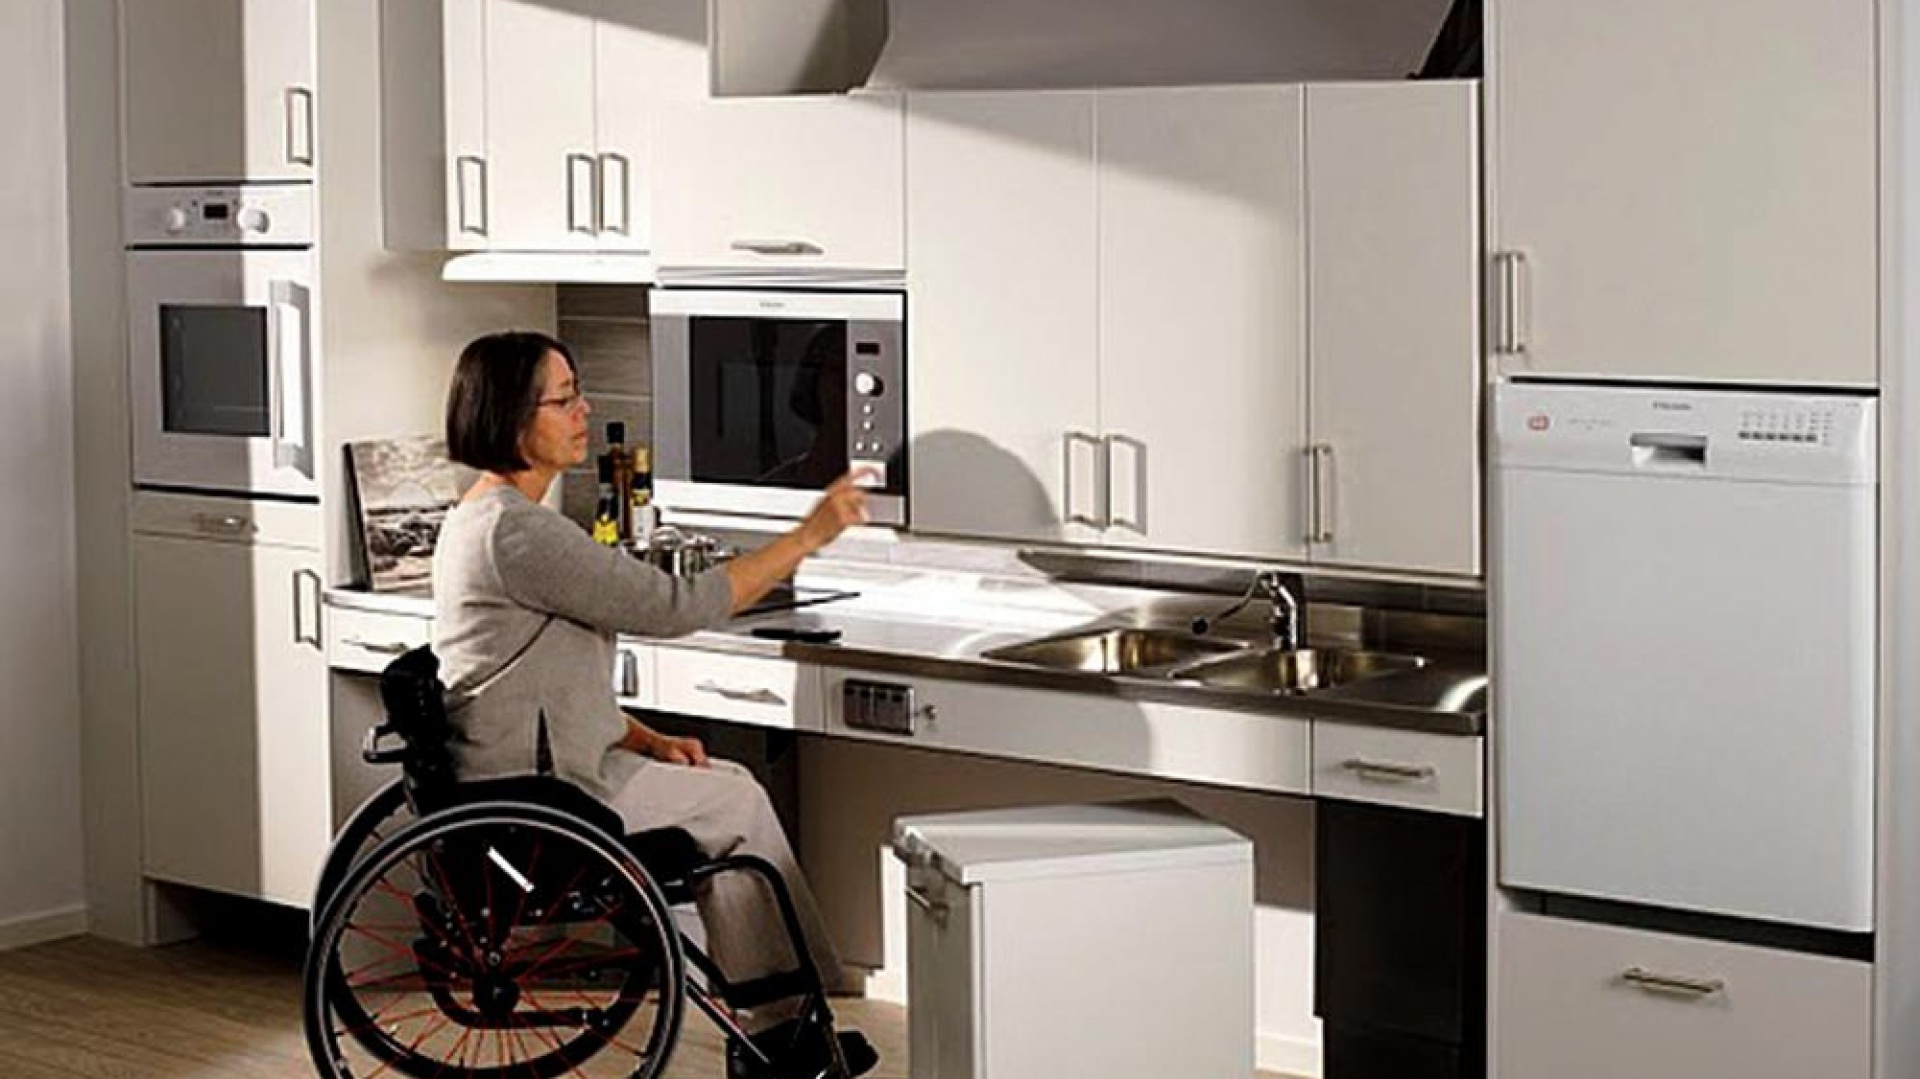 mieszkanie osoby niepełnosprawnej - kuchnia